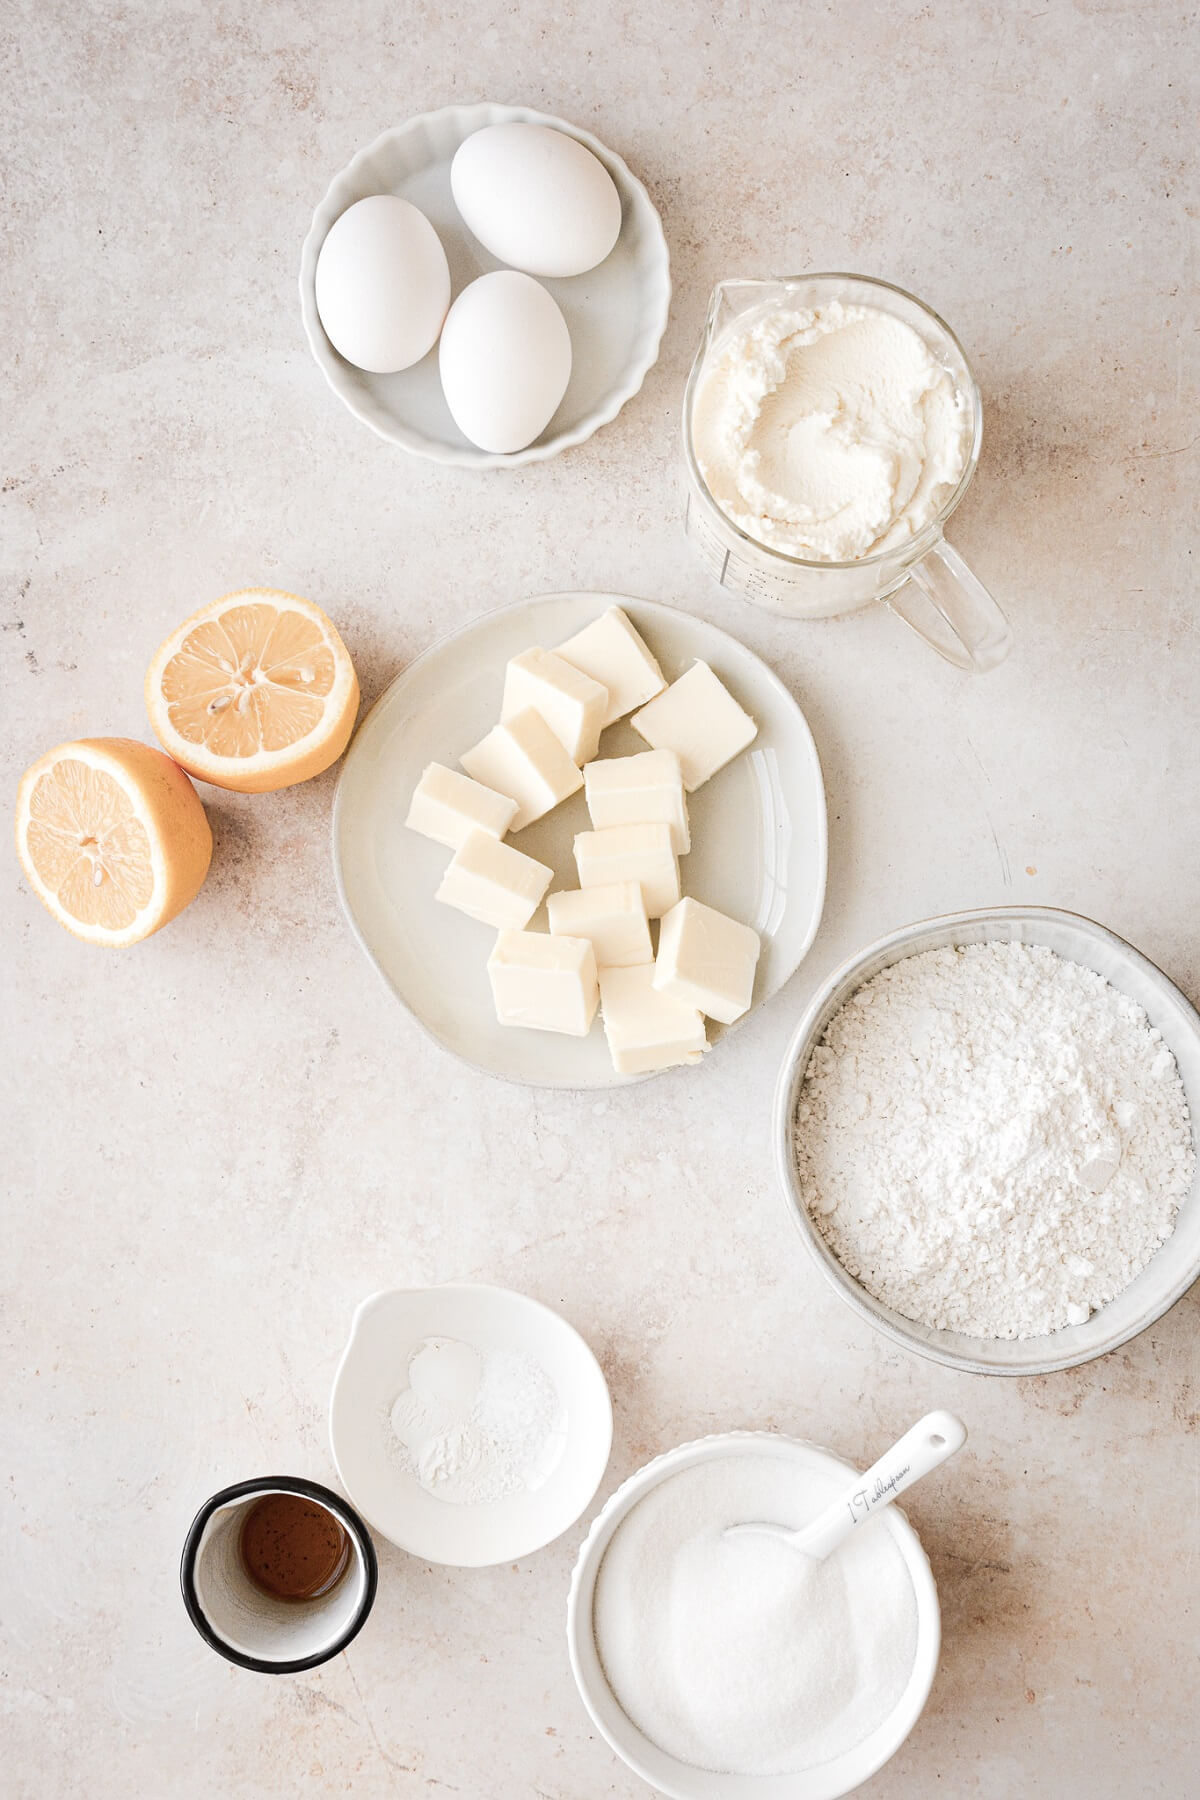 Ingredients for making an Italian lemon ricotta cake.